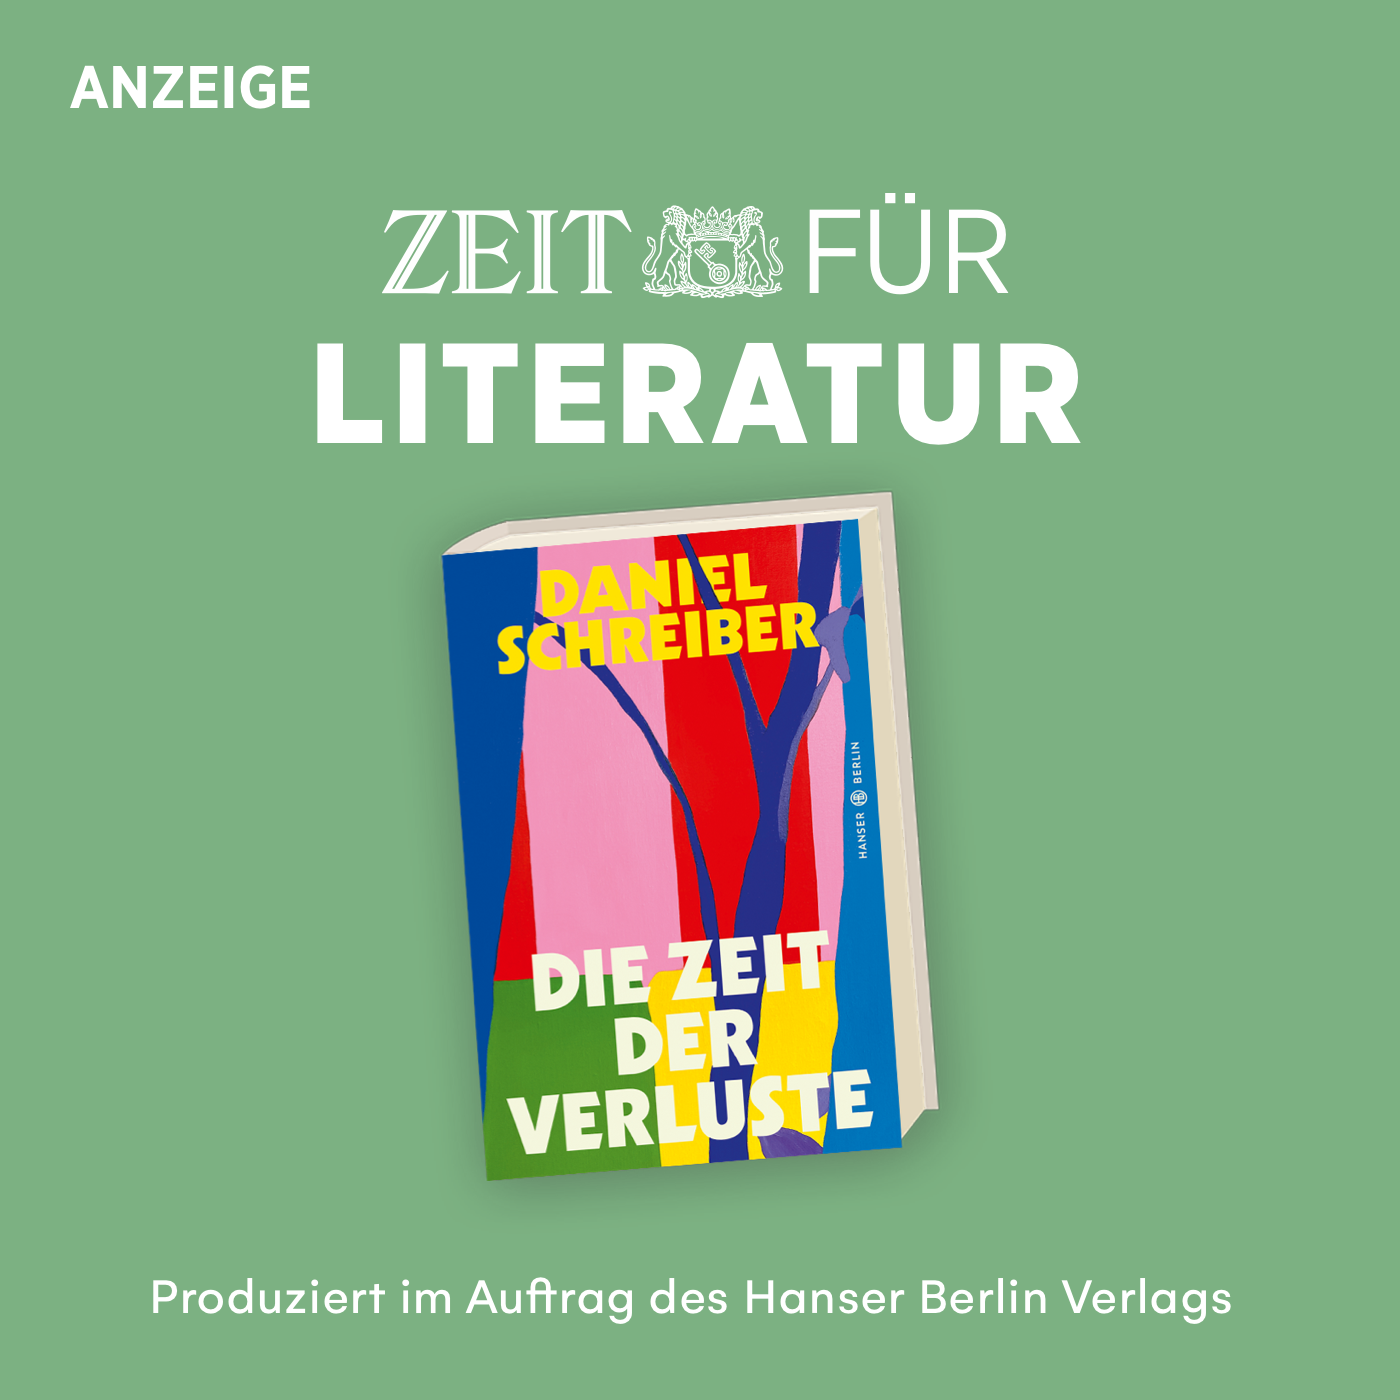 ZEIT für Literatur mit Daniel Schreiber